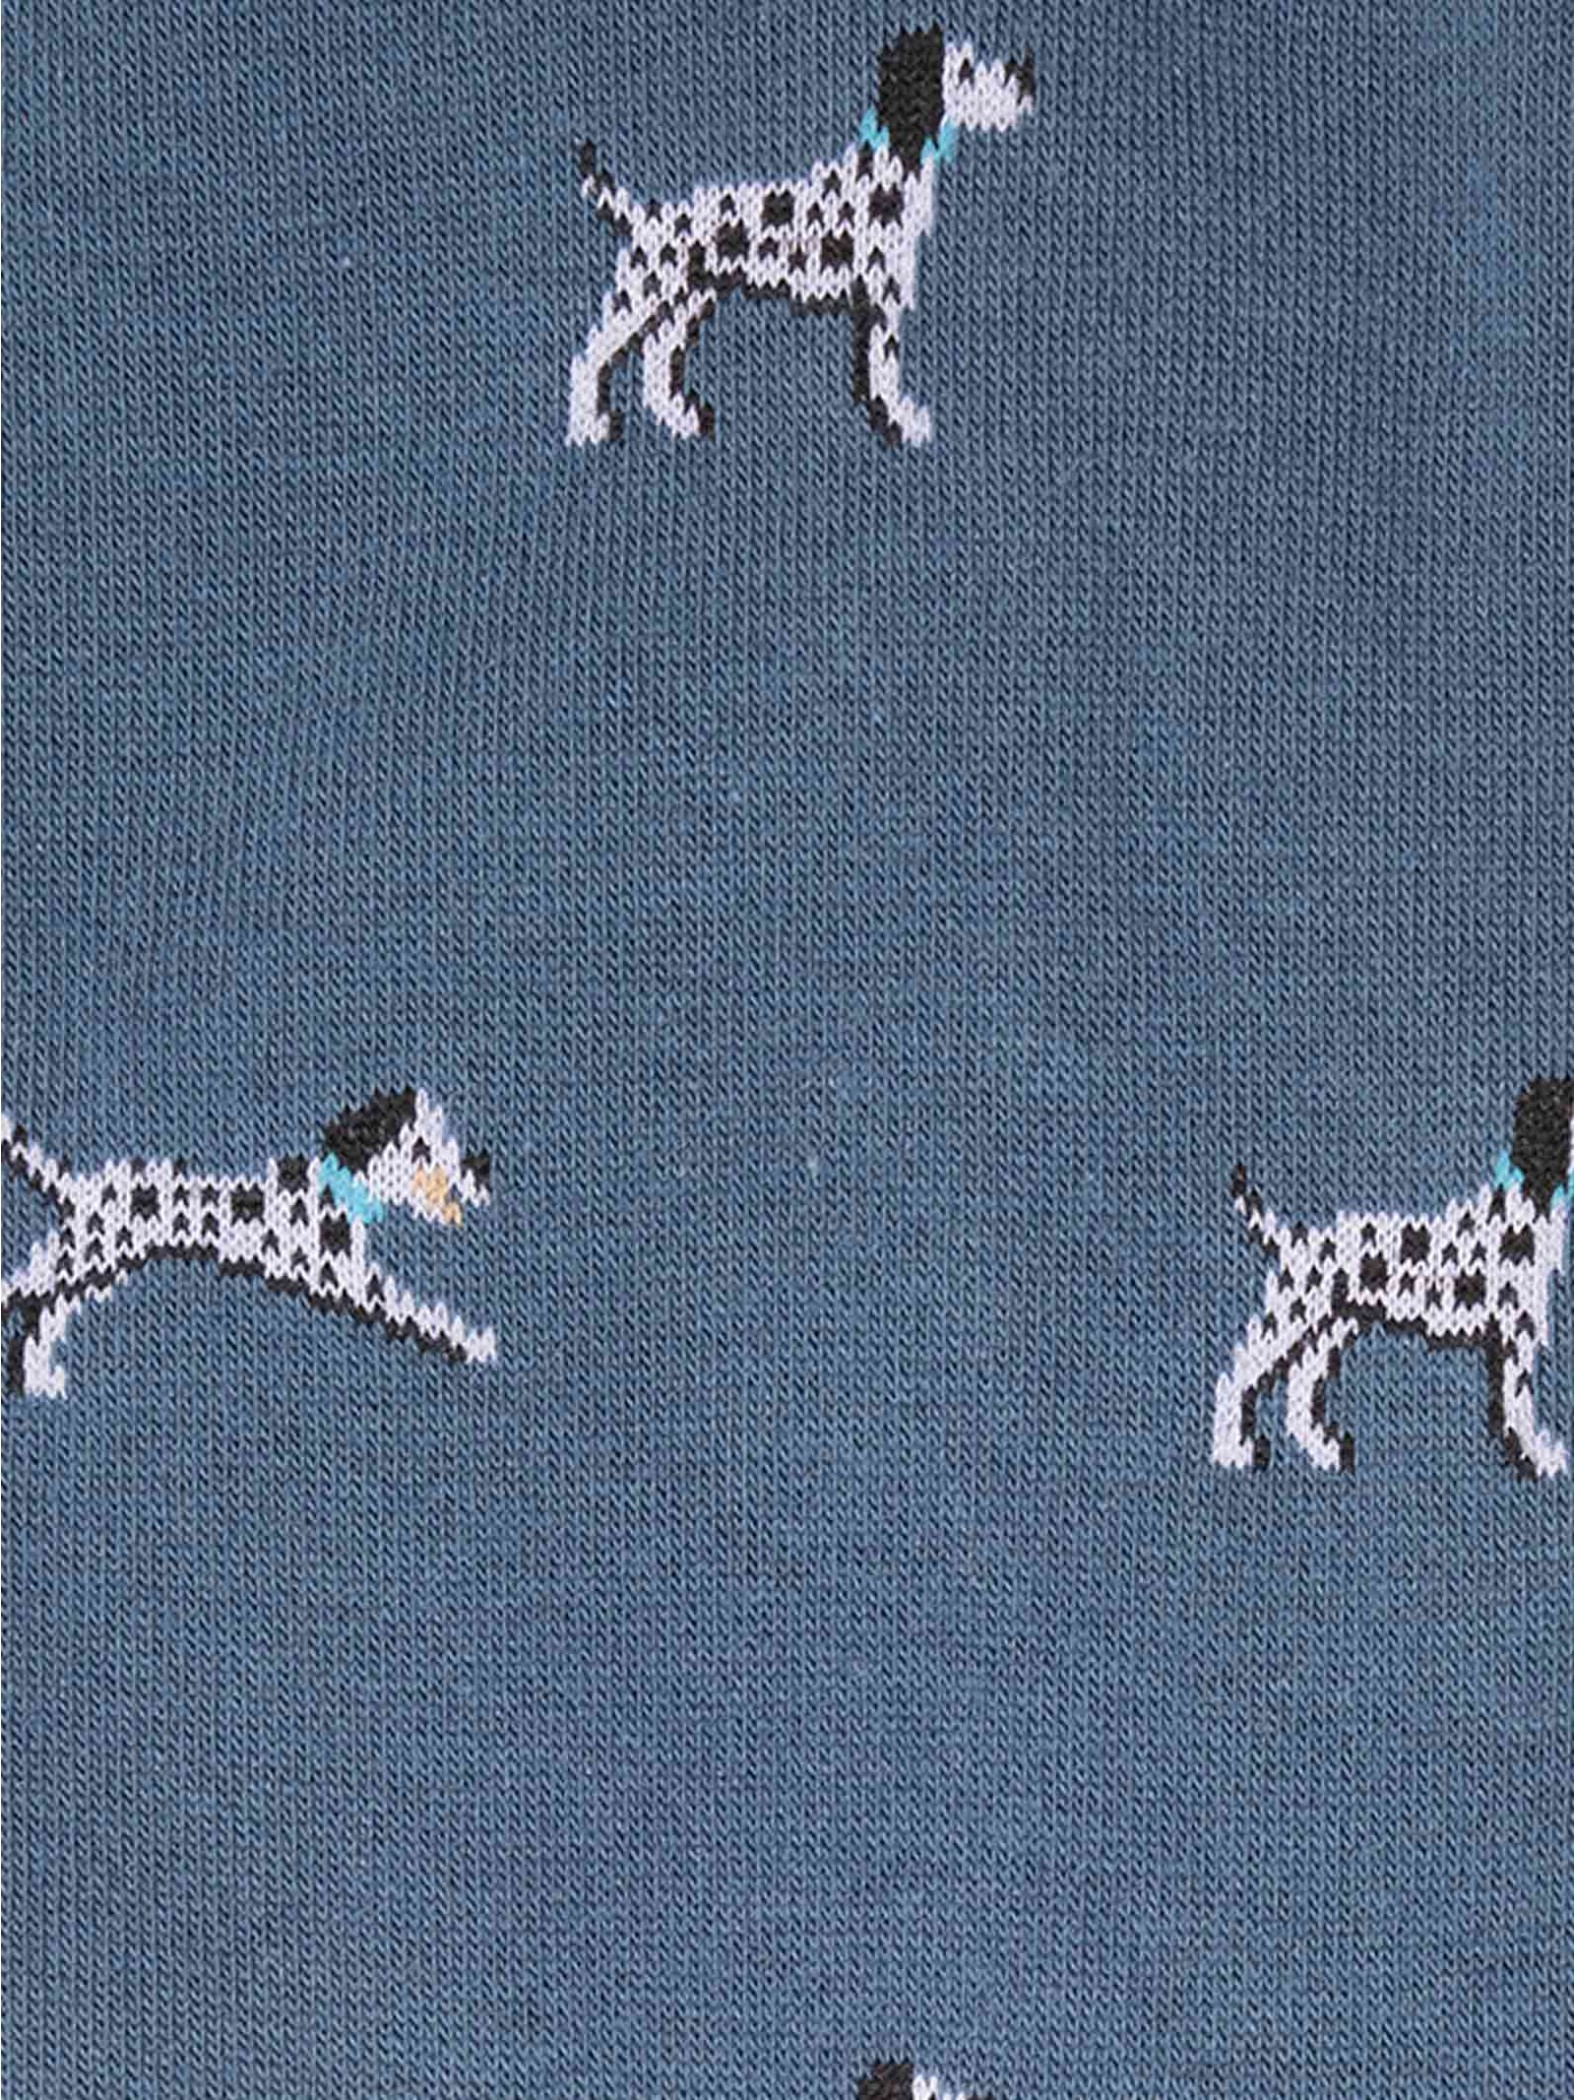 Kniestrümpfe für Herren mit Dalmatiner-Muster aus warmer Baumwolle - Made in Italy